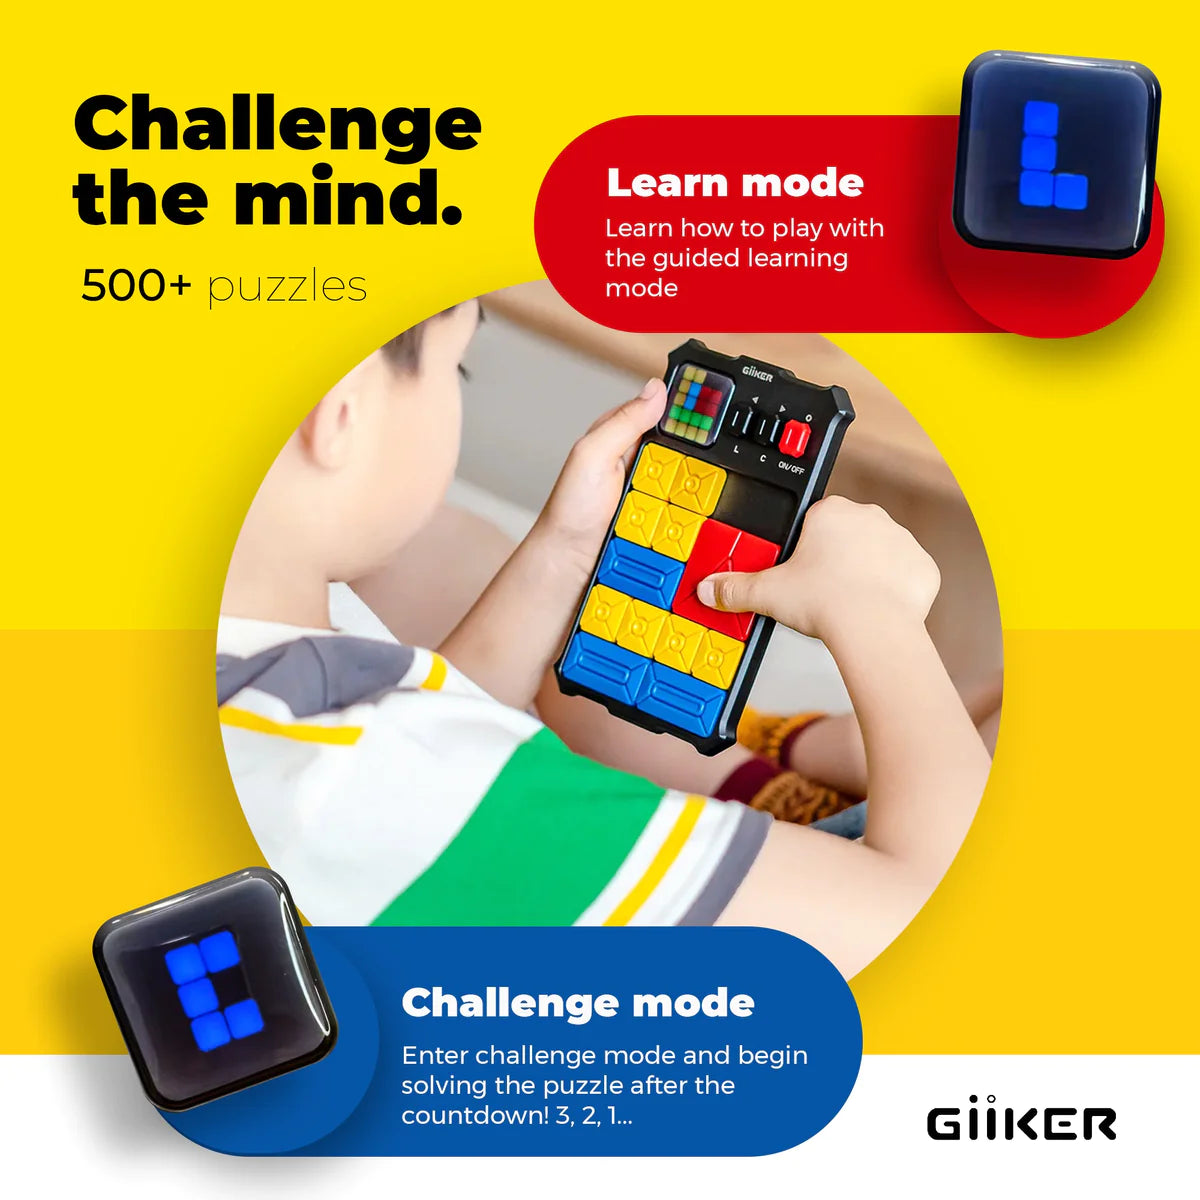 GiiKER Super Slide Puzzle Games